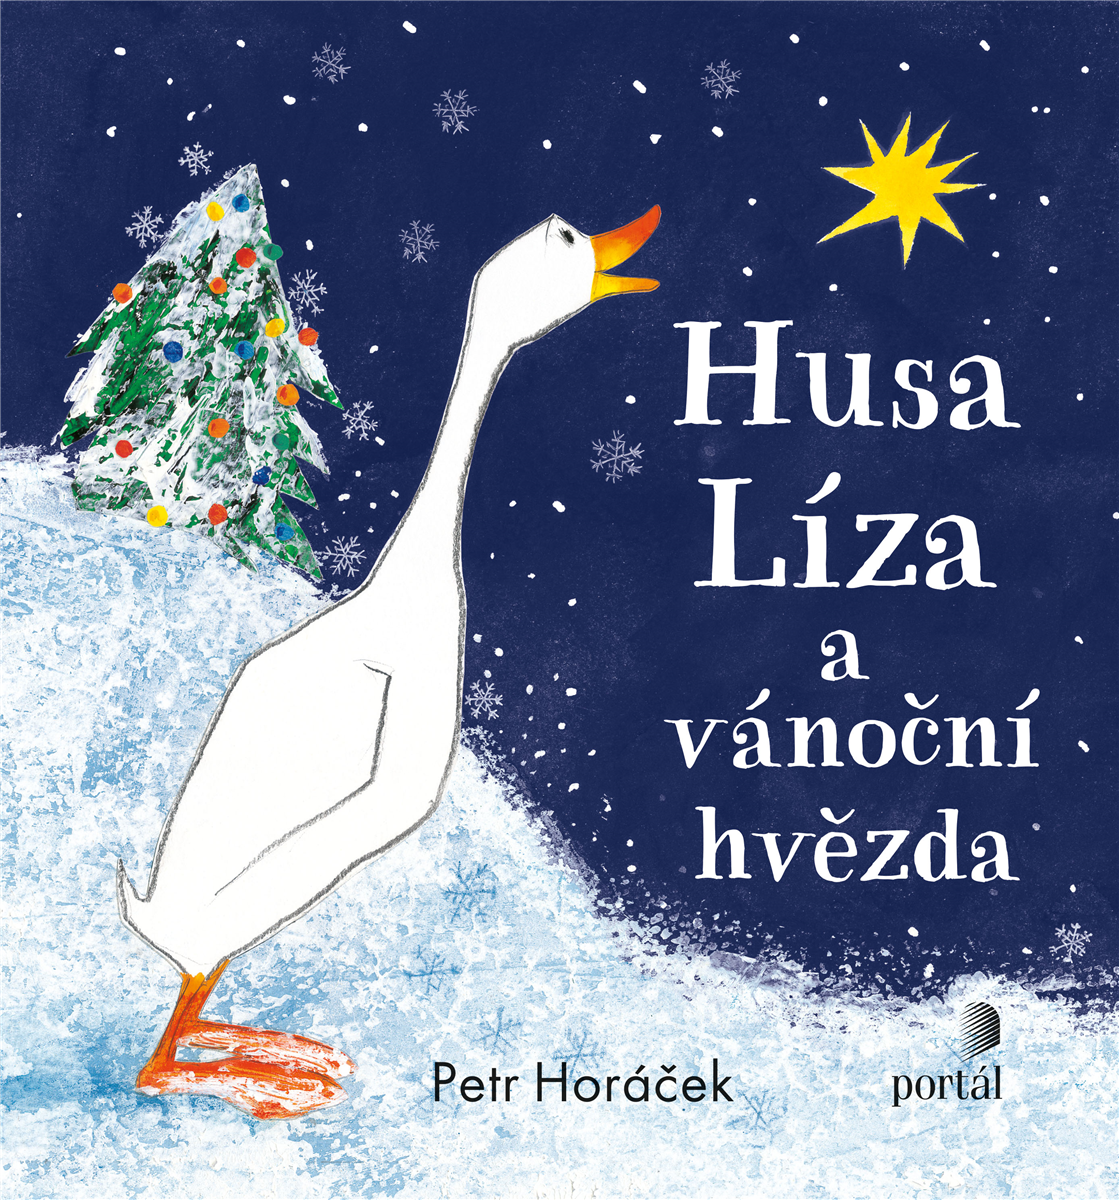 Husa Líza a vánoční hvězda-vánočně laděný příběh pro vaše děti